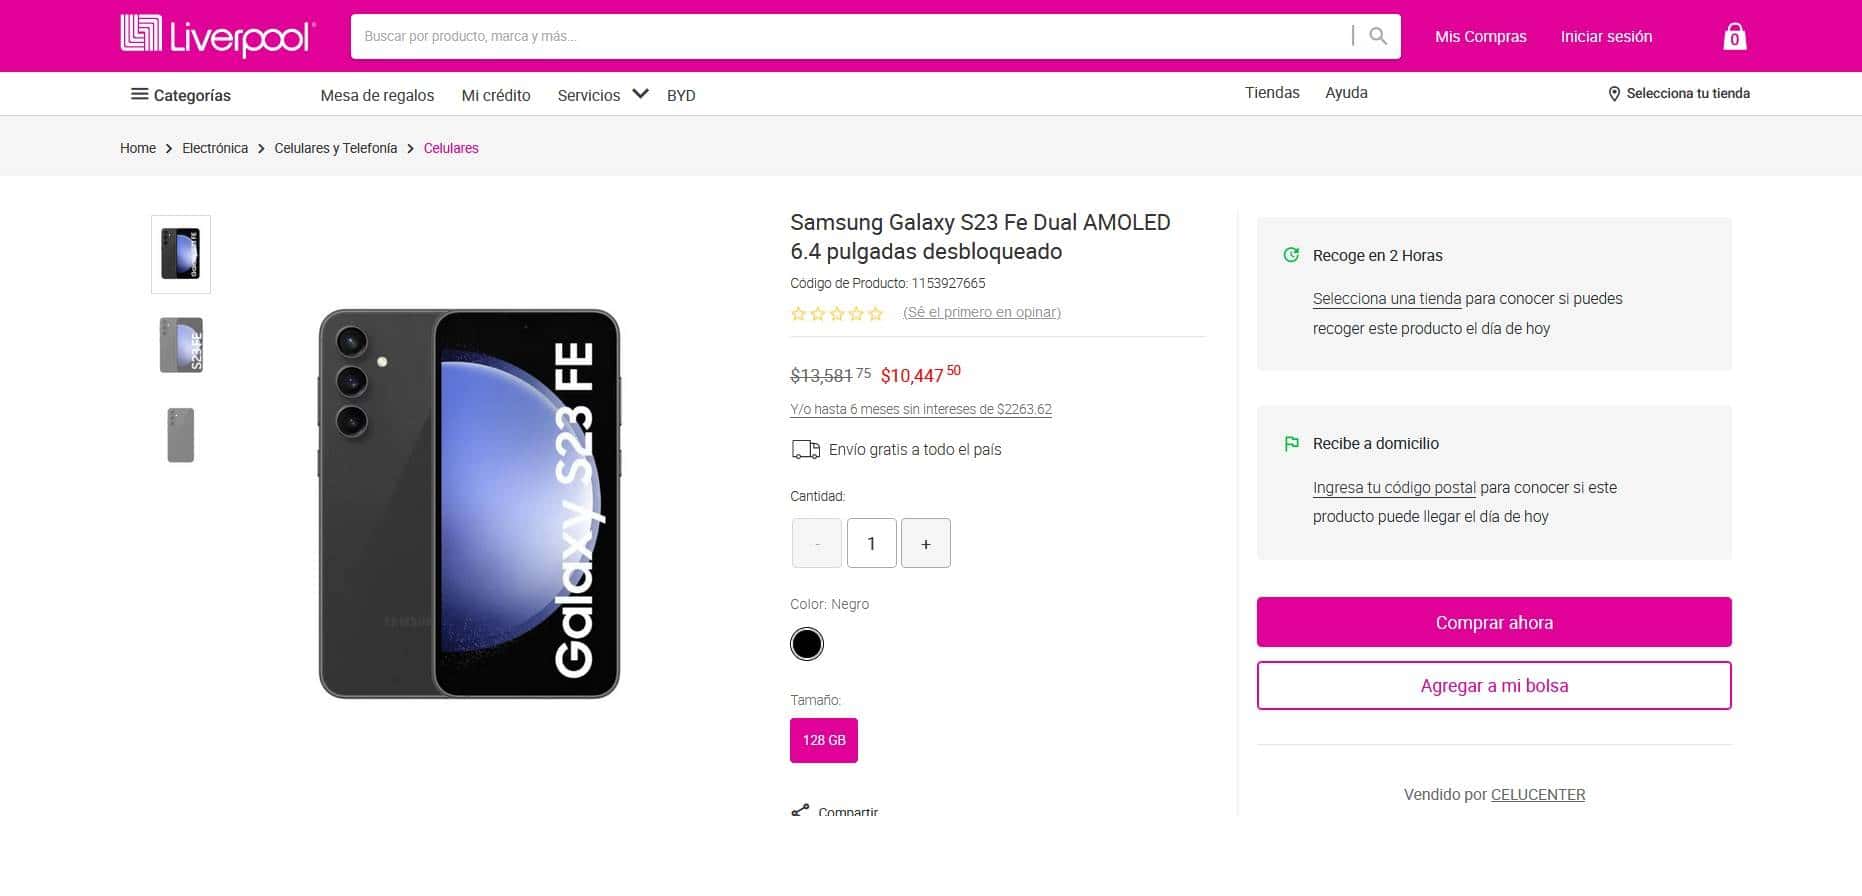 Características y precio del Samsung Galaxy S23 FE
